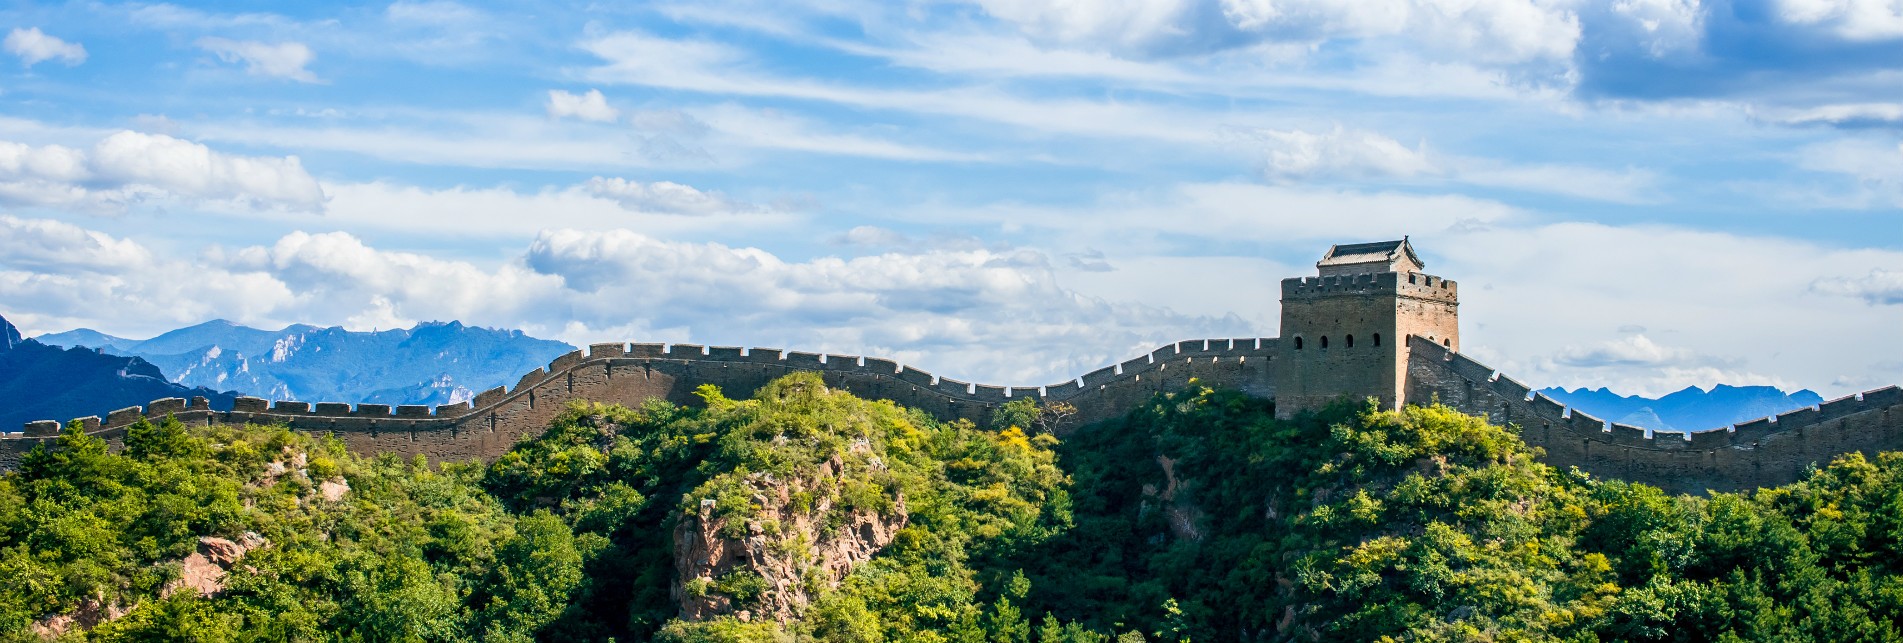 la Grande Muraille de jinshanling